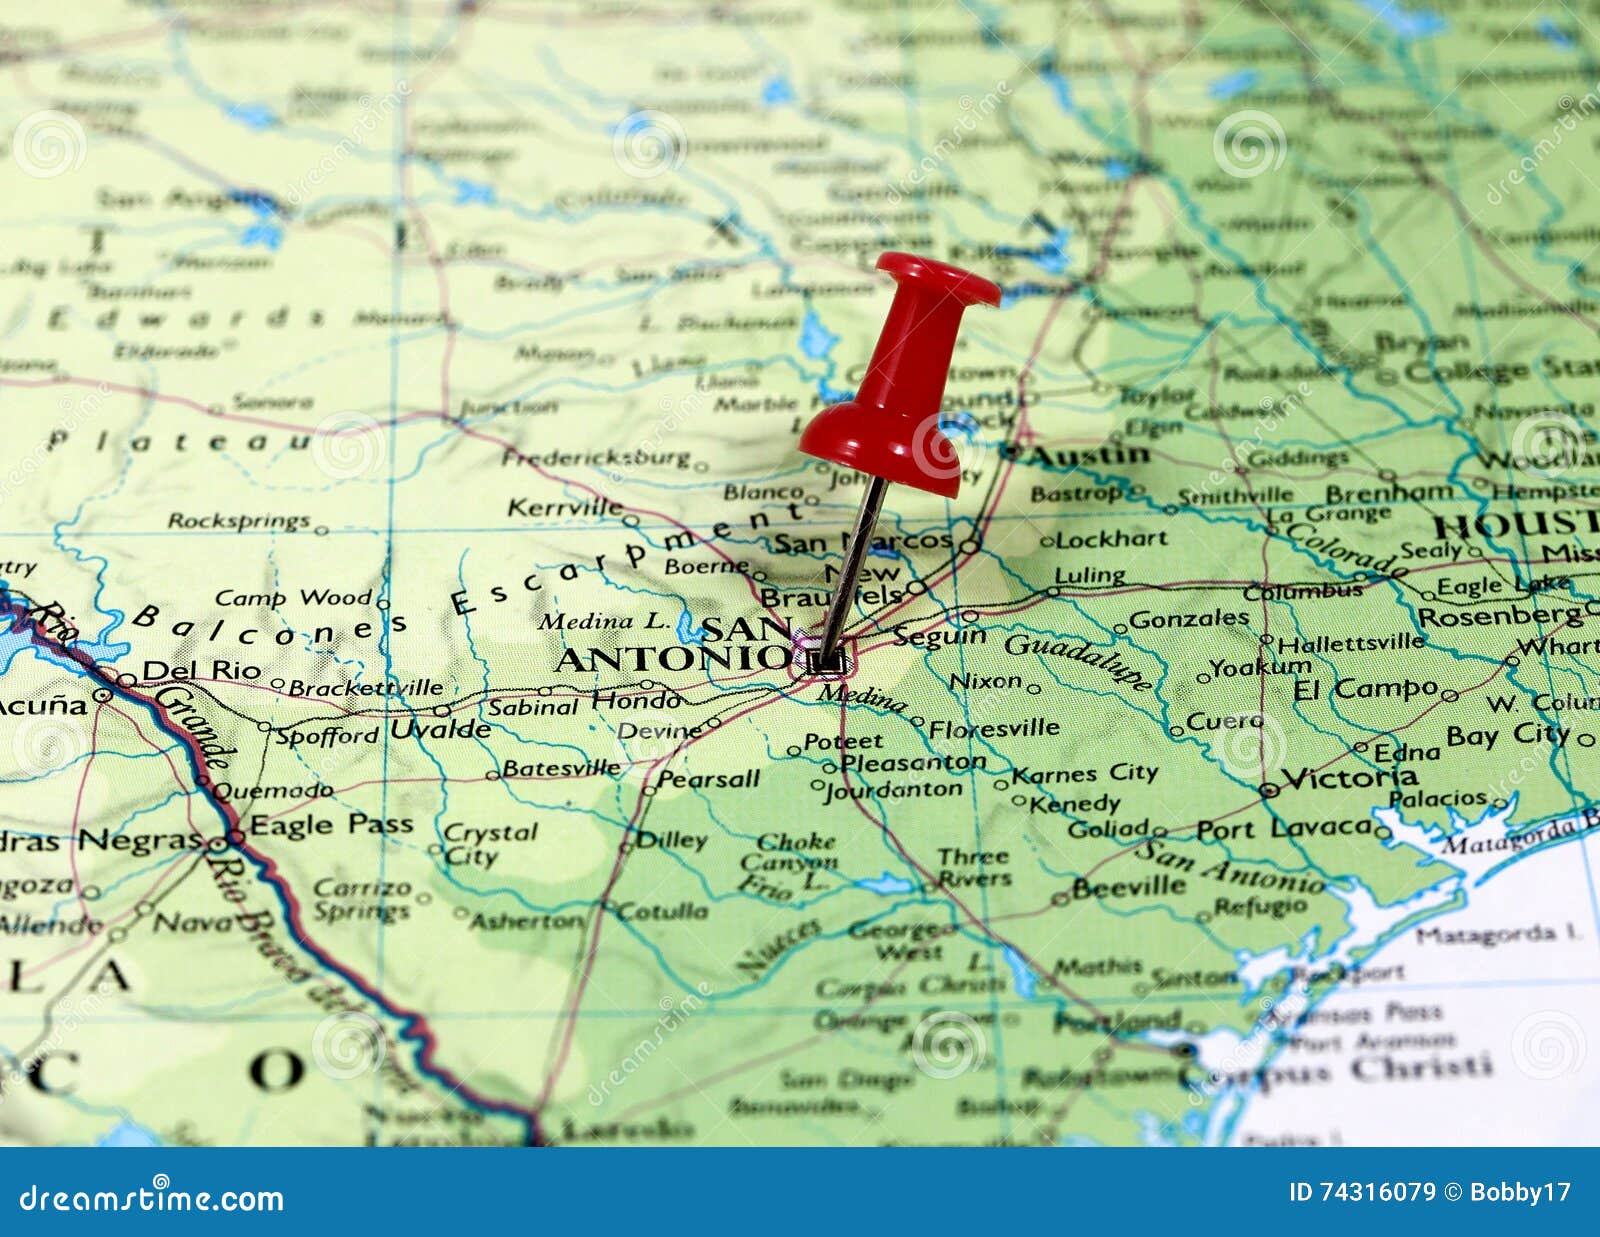 15 San Antonio Texas Usa Map Photos Free Royalty Free Stock